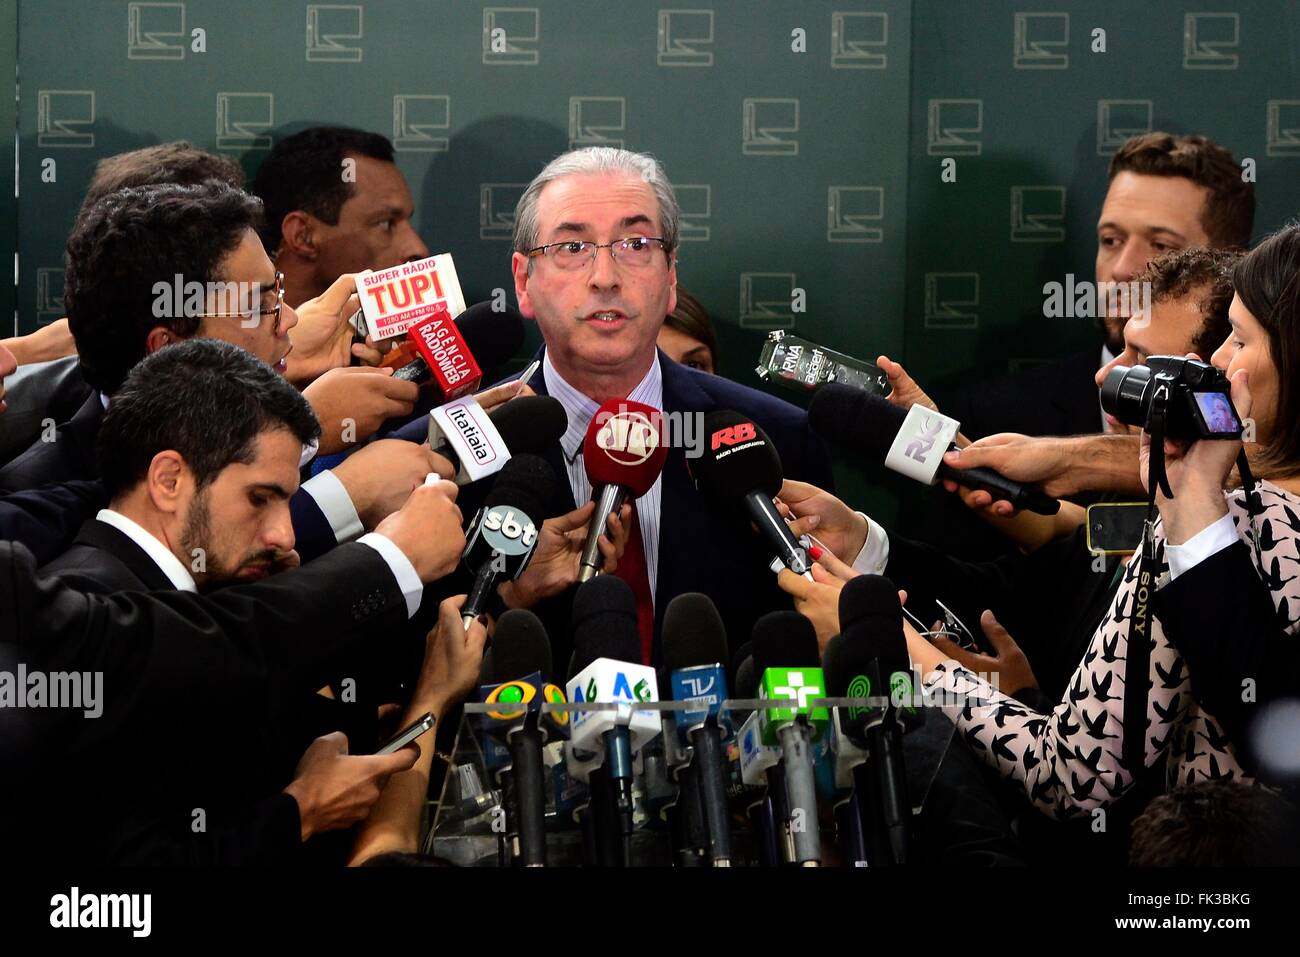 Brasilien-Sprecher des Hauses Eduardo Cunha während einer Pressekonferenz 1. September 2015 in Brasilia, Brasilien. Cunha wird wegen Korruption und Schweizer Geheimkonten untersucht. Stockfoto